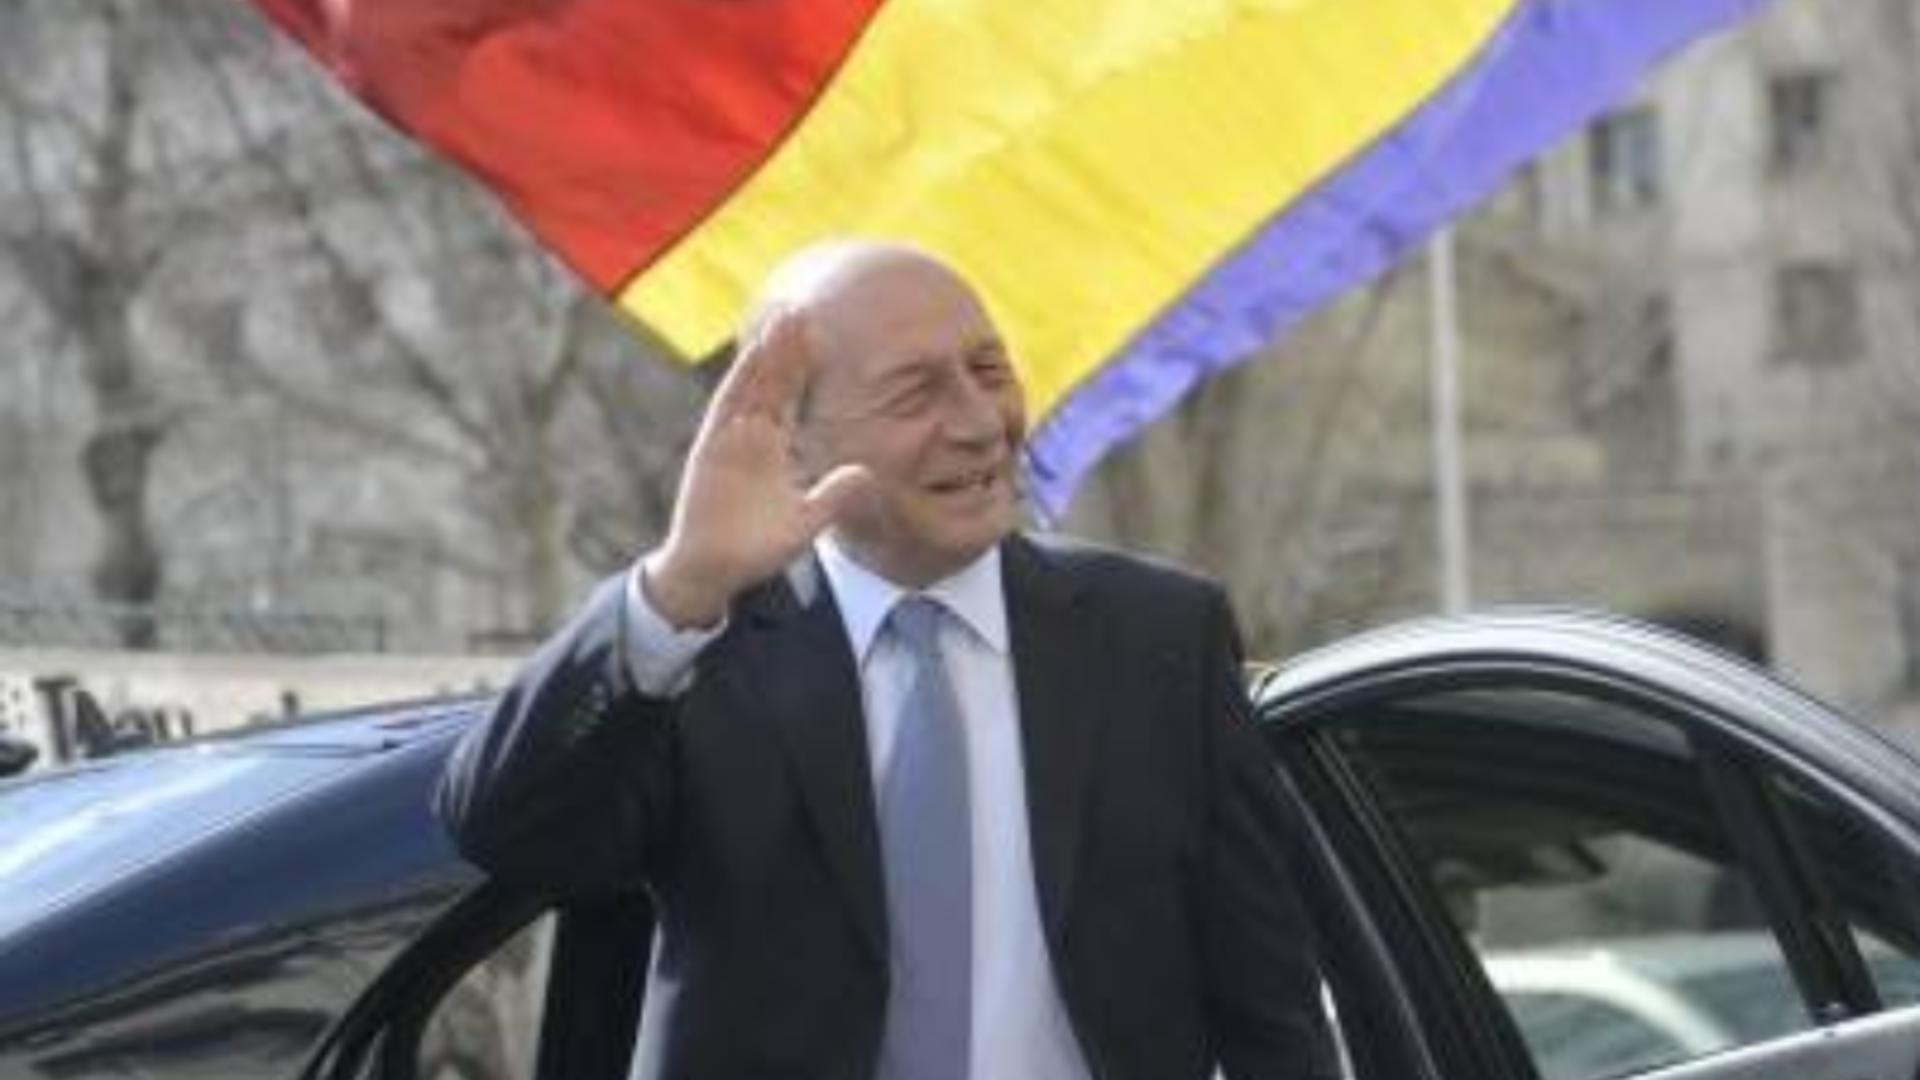 Băsescu ironizează planurile lui Iohannis: “Nu mai este la masa UE!” Ce mesaj a decriptat fostul președinte după congresul PPE?